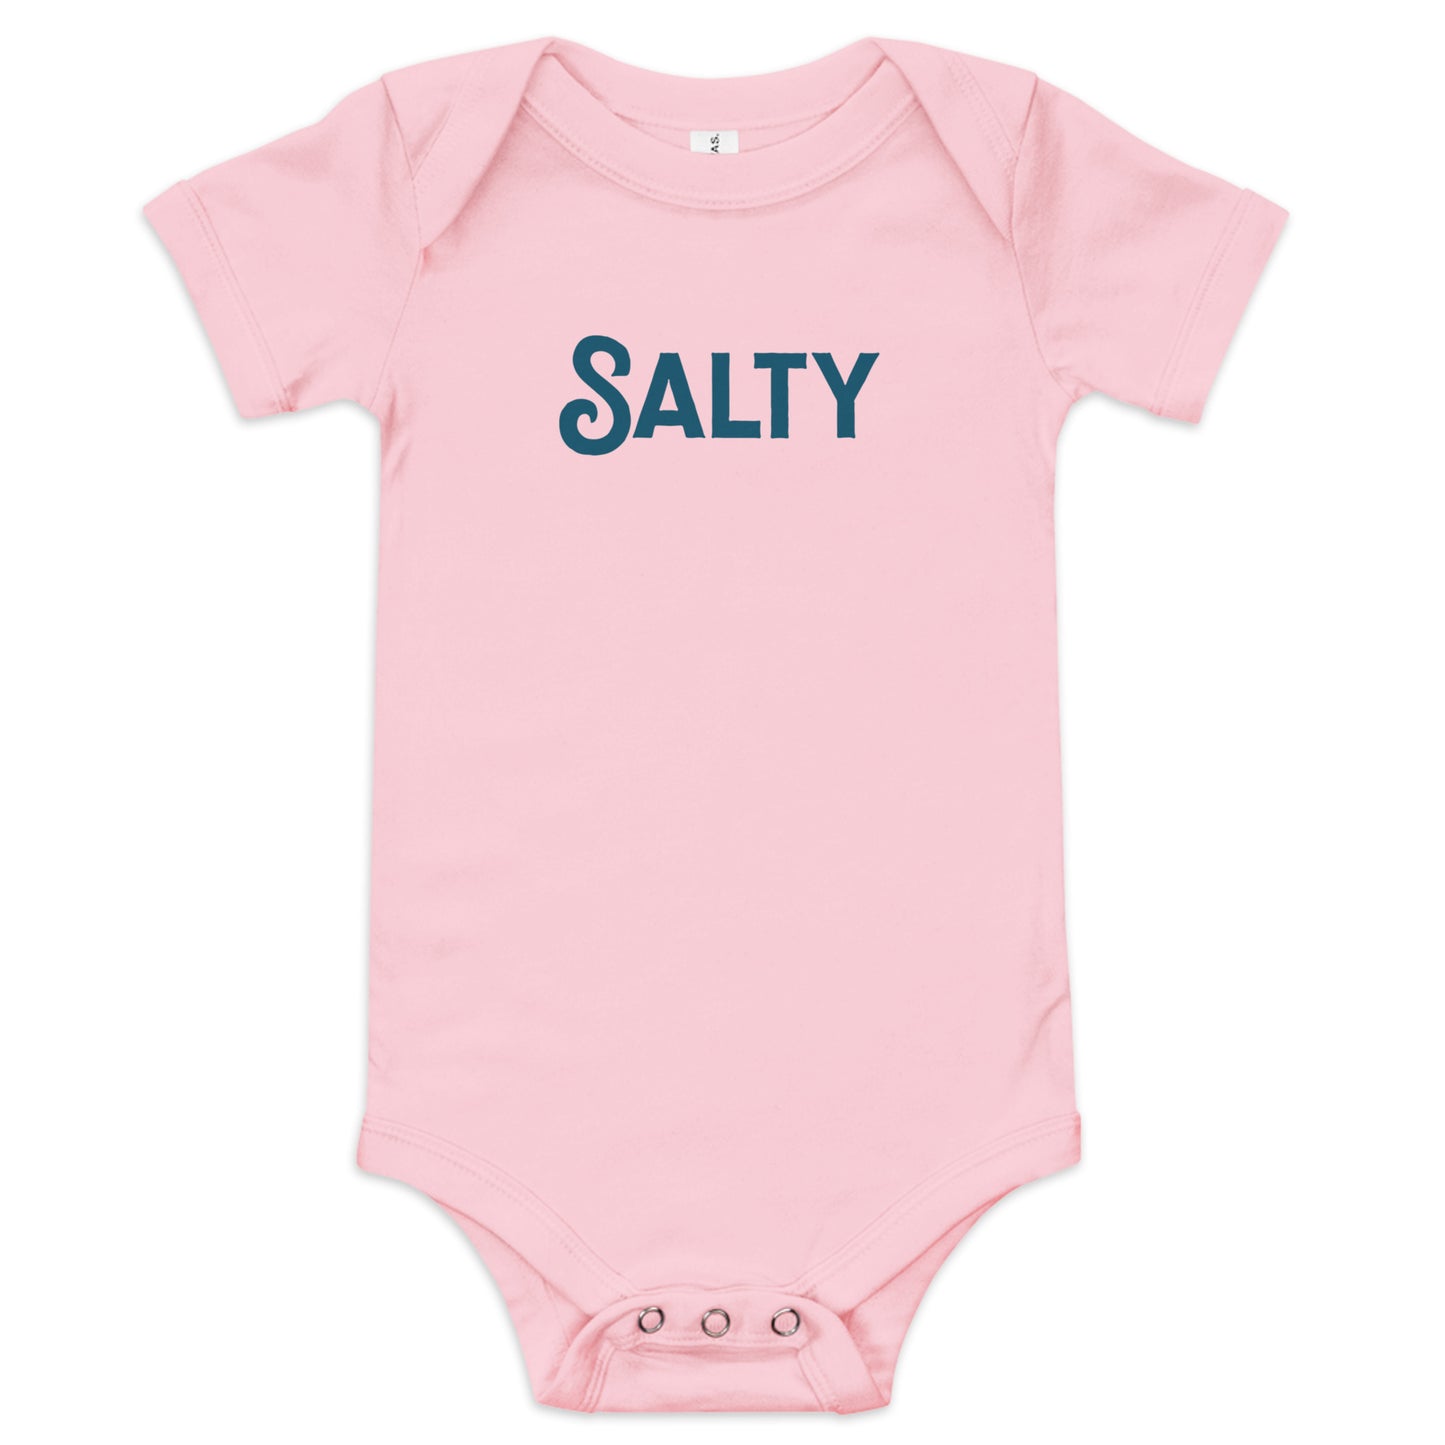 Salty - Baby Bodysuit